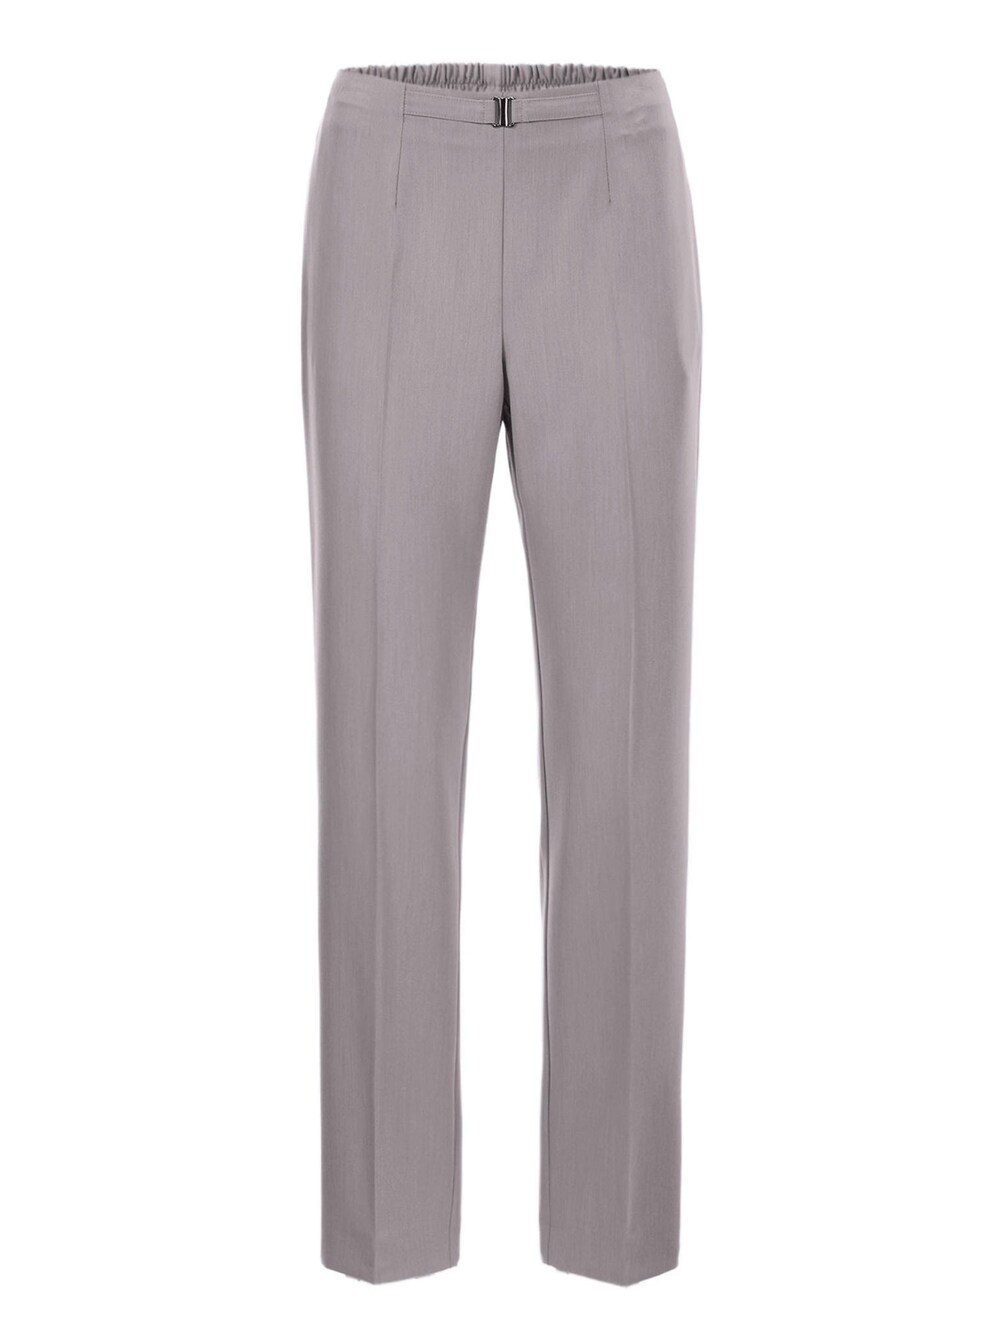 Обычные плиссированные брюки Goldner Martha, серый